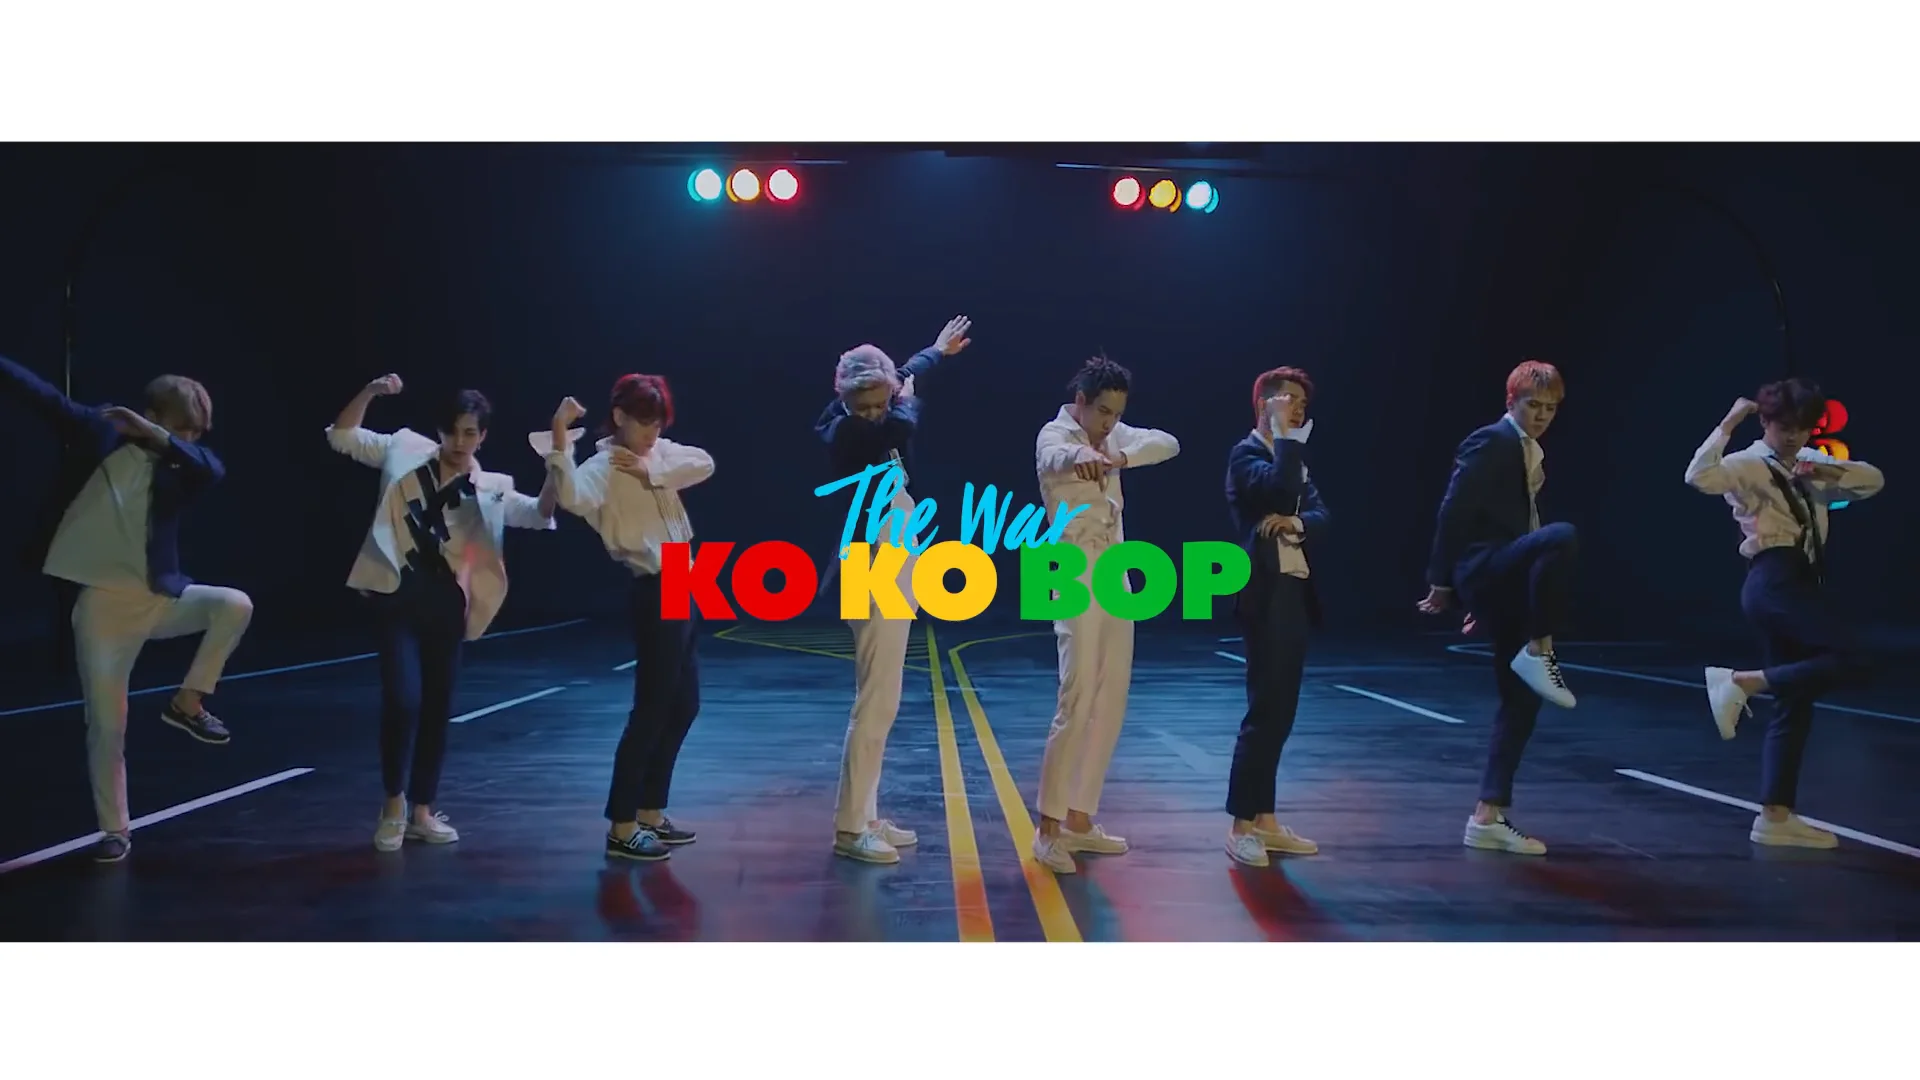 EXO 엑소 'Ko Ko Bop' MV 